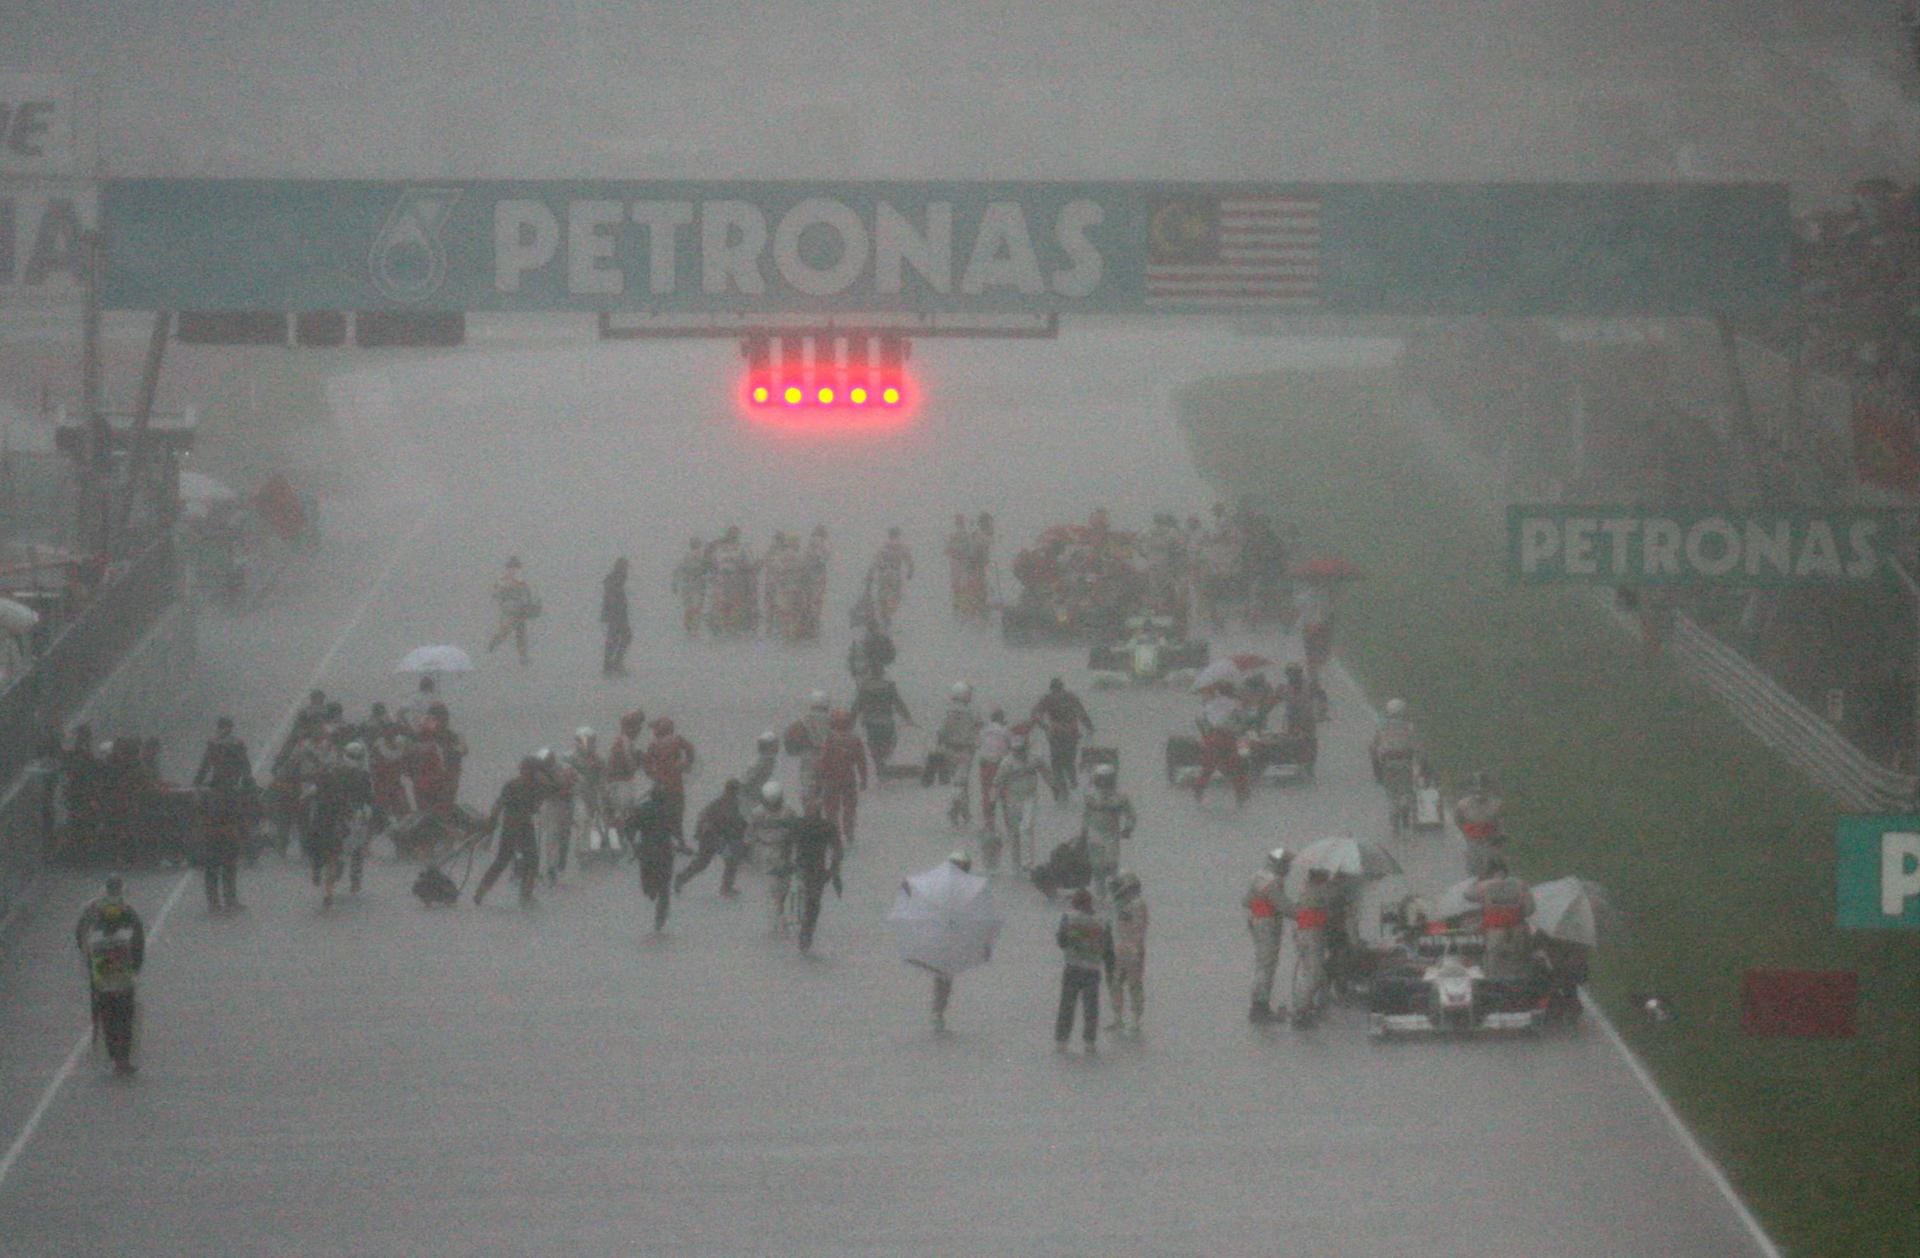 Der Sepang International Circuit in Malaysia lieferte eins der legendärsten Rennen der Geschichte. Denn 2009 gewann der damalige WM-Führende Jenson Button trotz vier Boxenstopps stehend im Regen, da das Rennen nach 32 abgebrochen werden musste und er zu dem Zeitpunkt auf dem ersten Rang stand. Der Brite siegte vor Nick Heidfeld und Timo Glock, die ebenfalls vom Monsun profitierten. Gewertet wurde der Stand nach Runde 31.